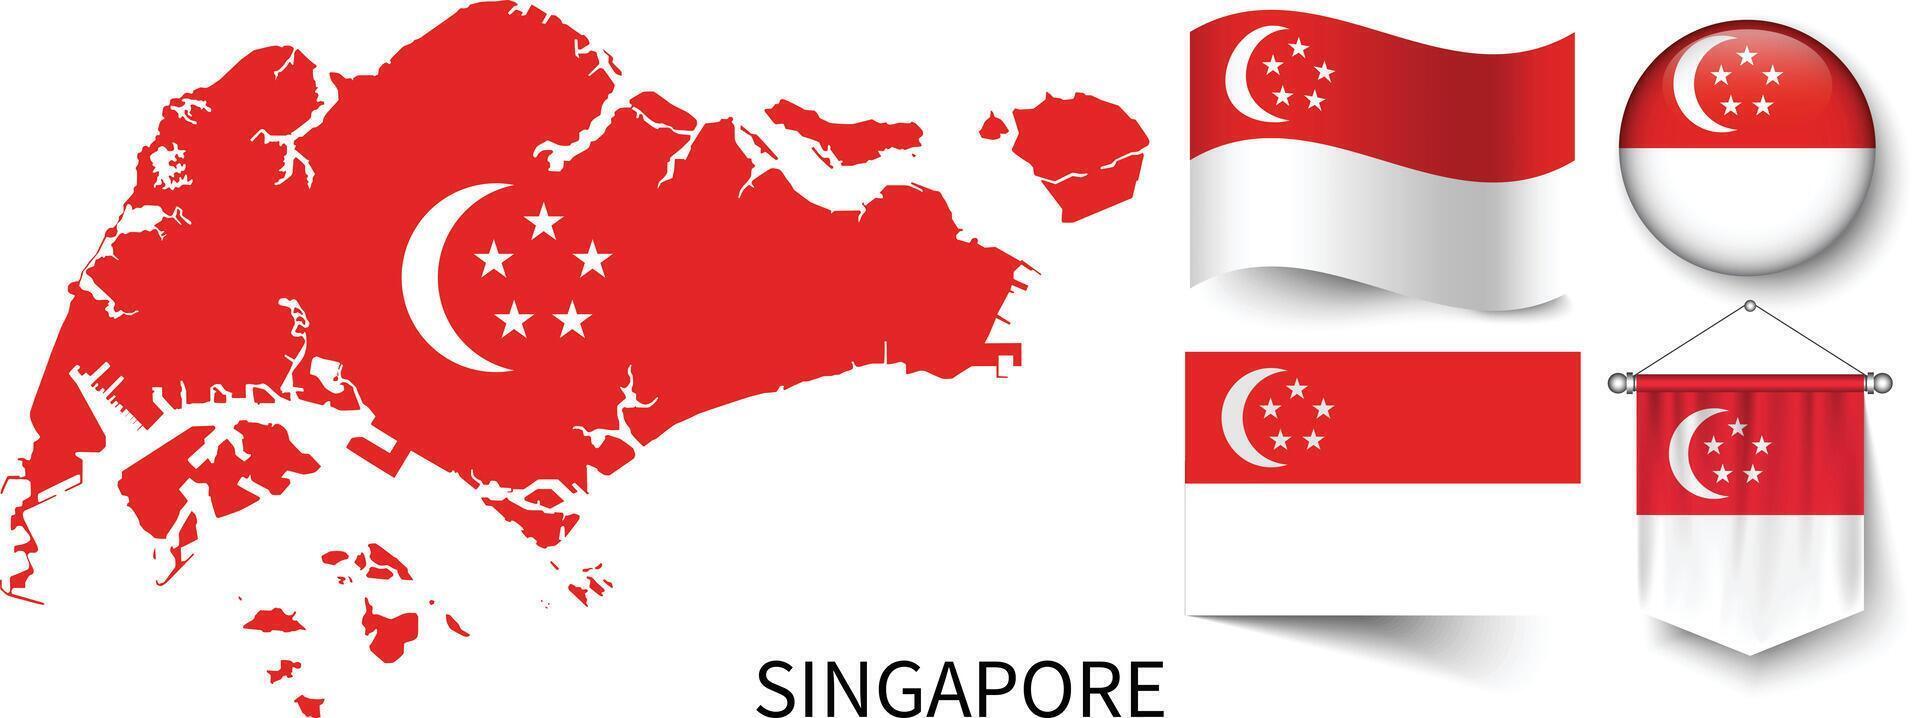 de divers patronen van de Singapore nationaal vlaggen en de kaart van singapore's borders vector